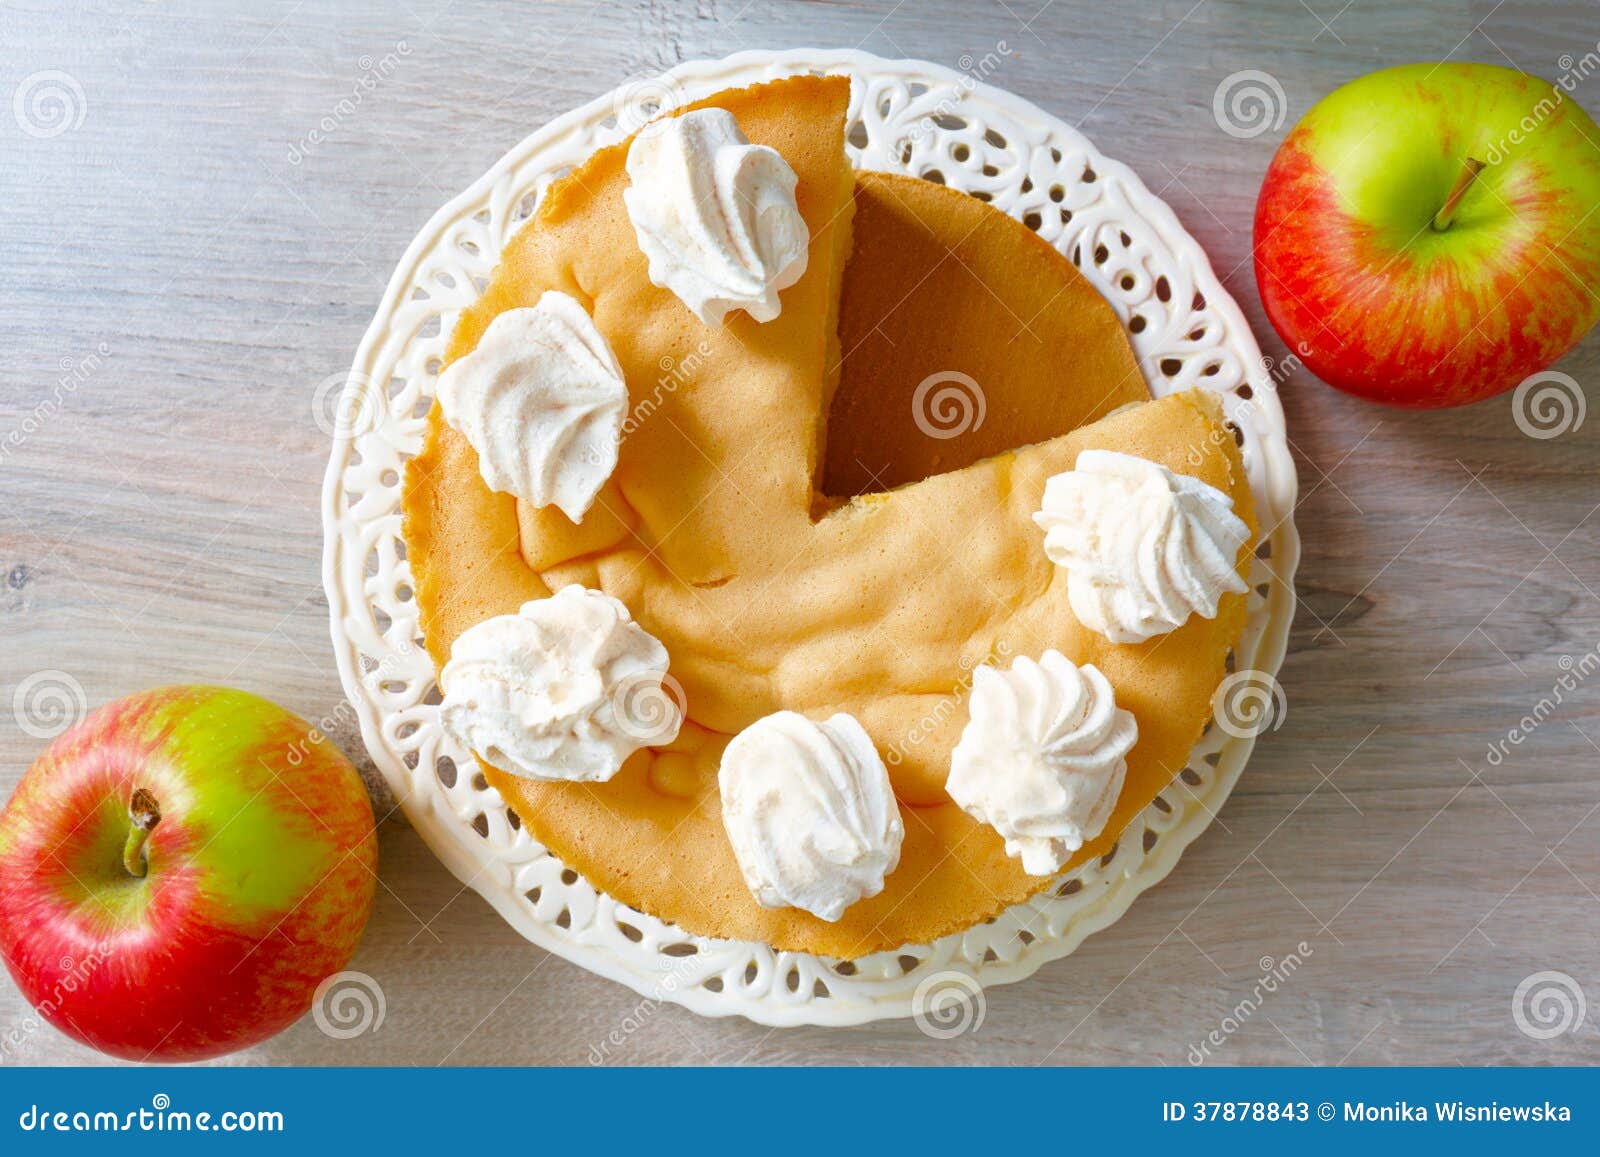 德国传统苹果蛋糕?简单的做法竟如此美味‼️ - 哔哩哔哩